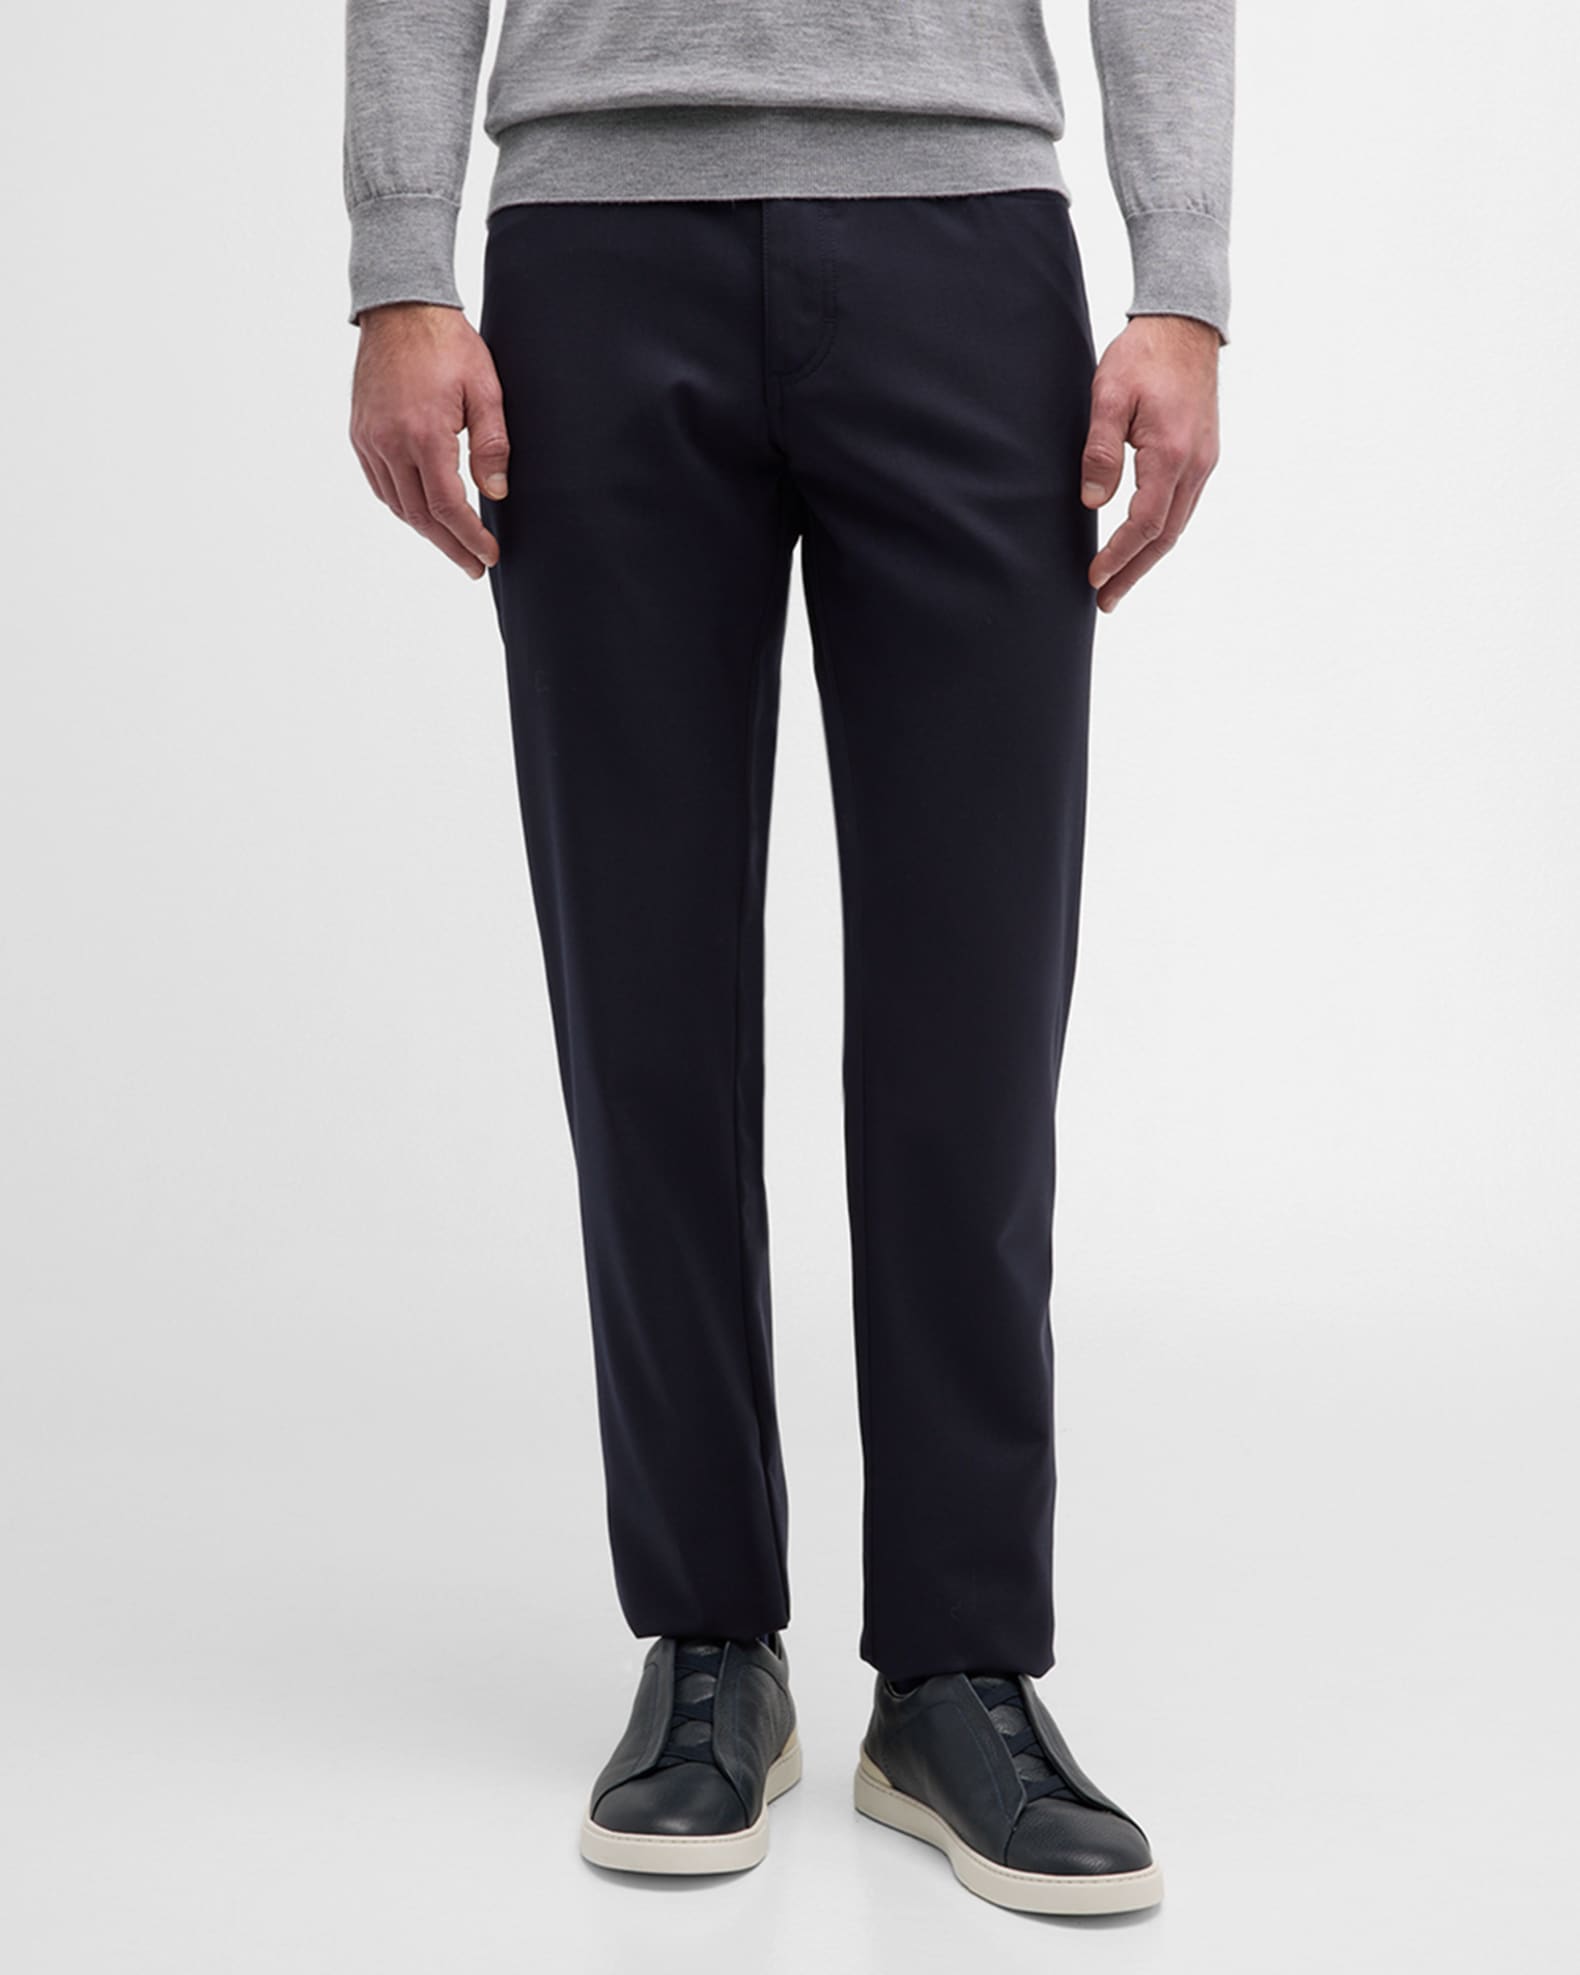 ZEGNA Men's Wool 5-Pocket Pants | Neiman Marcus